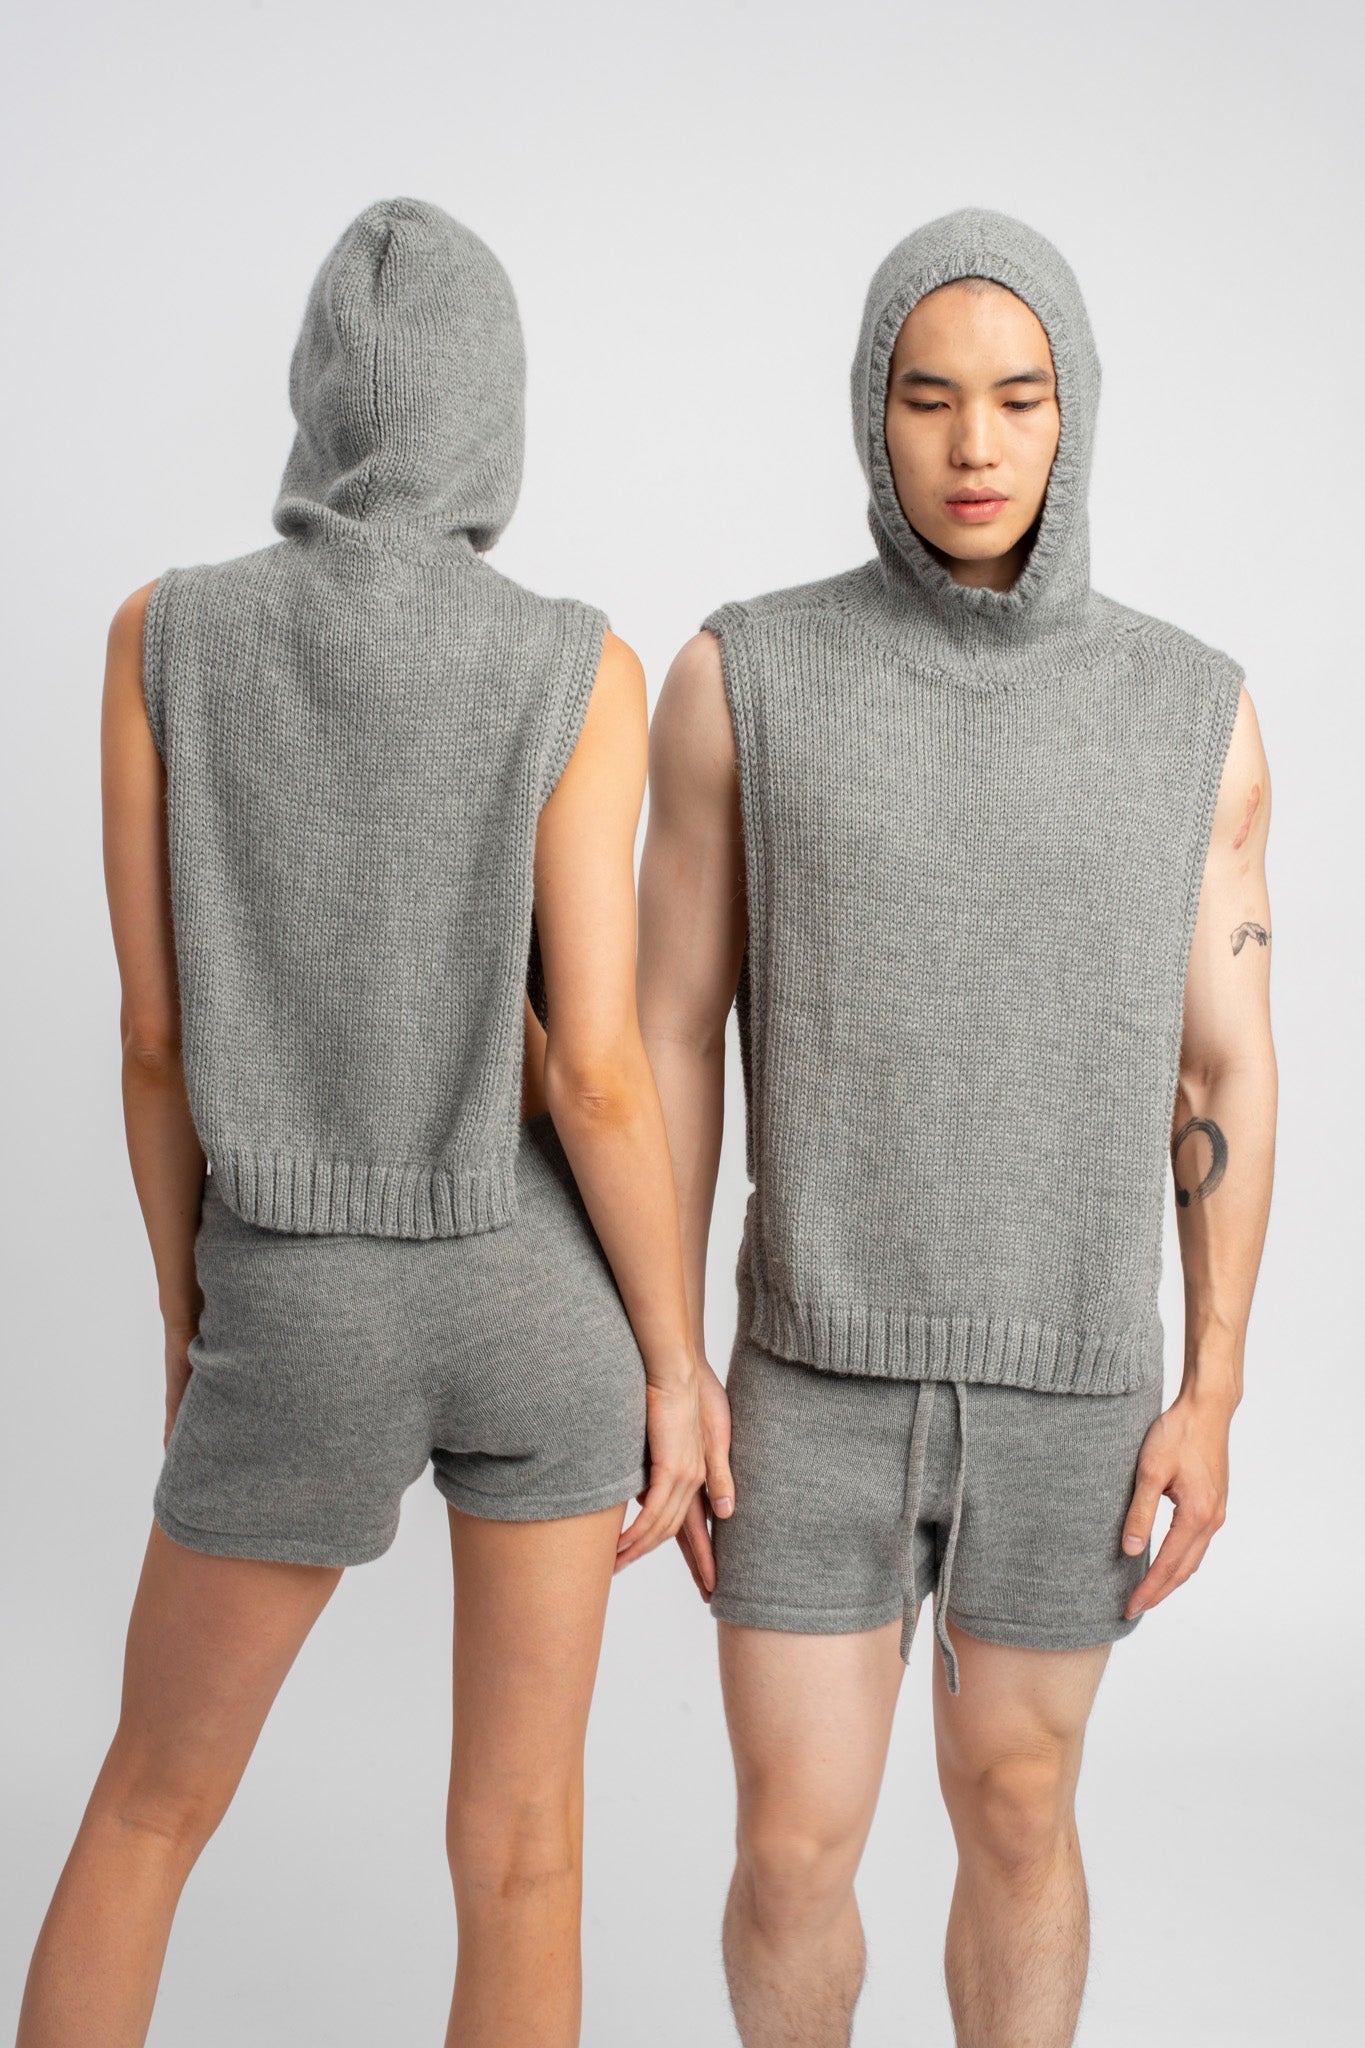 Two models wearing poncho in light grey alpaca wool wearing hoods